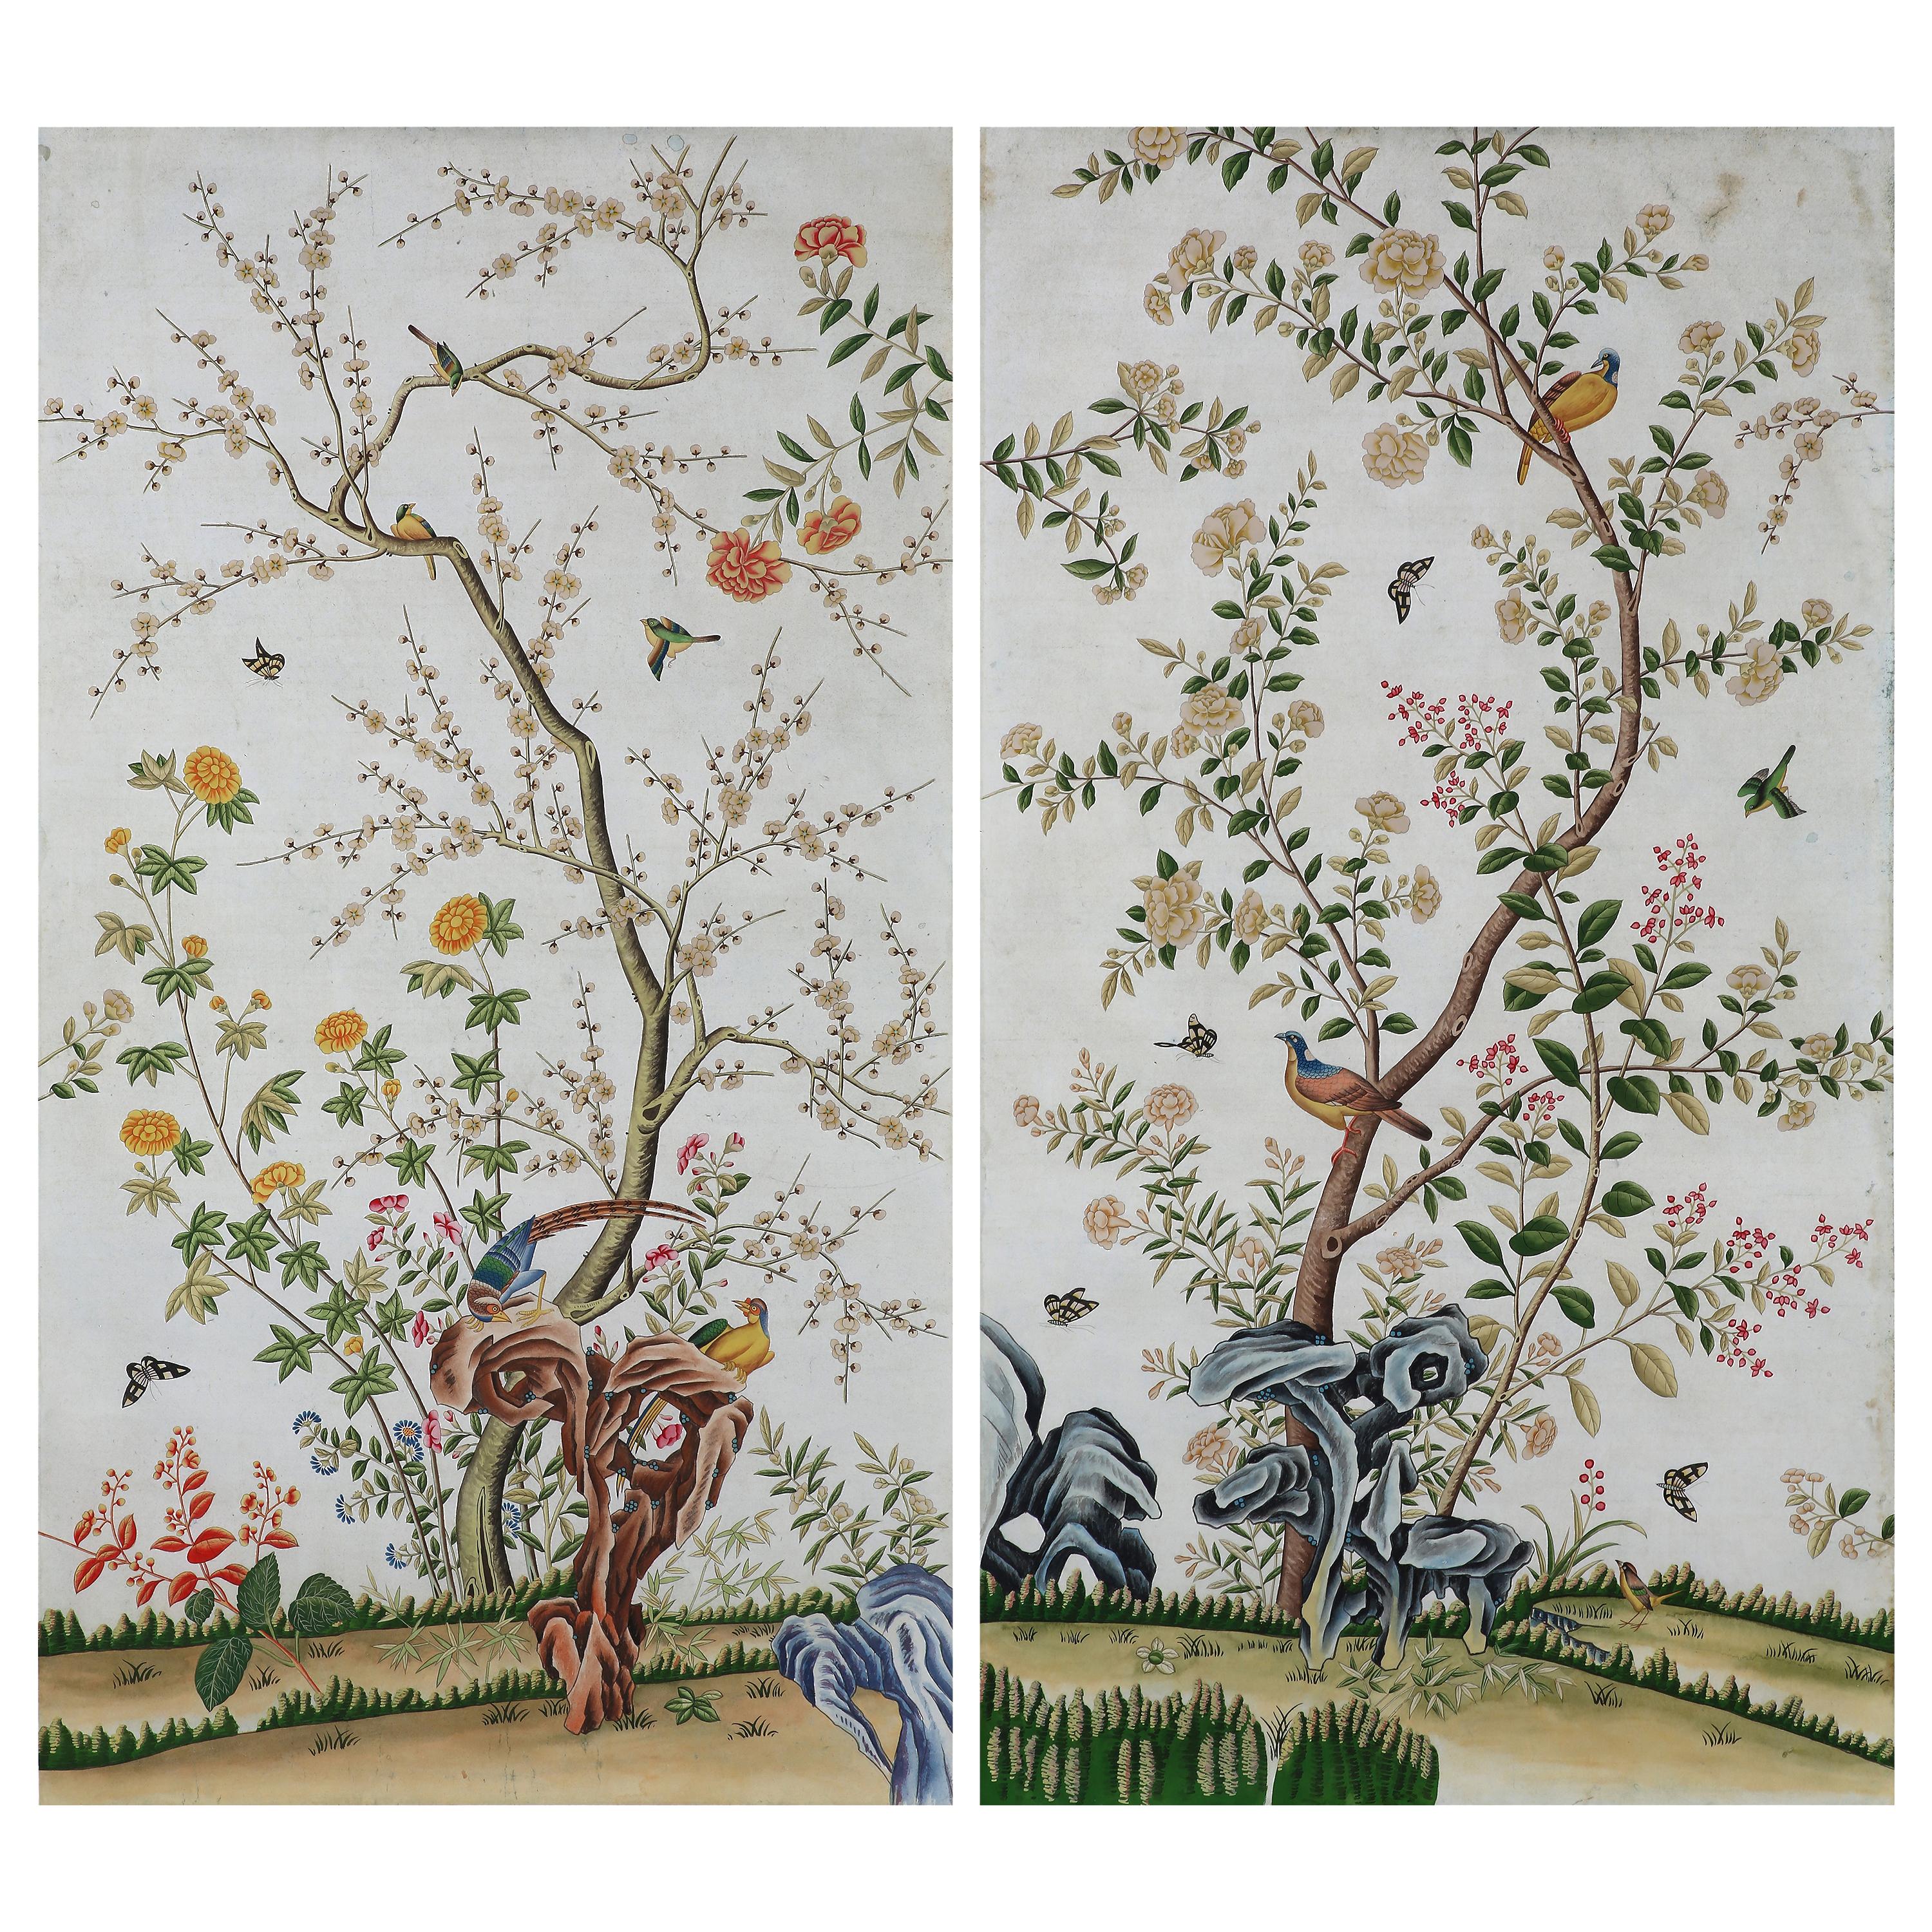 Panneaux de papier peints à la main de style chinoiseries représentant des oiseaux et des fleurs de printemps